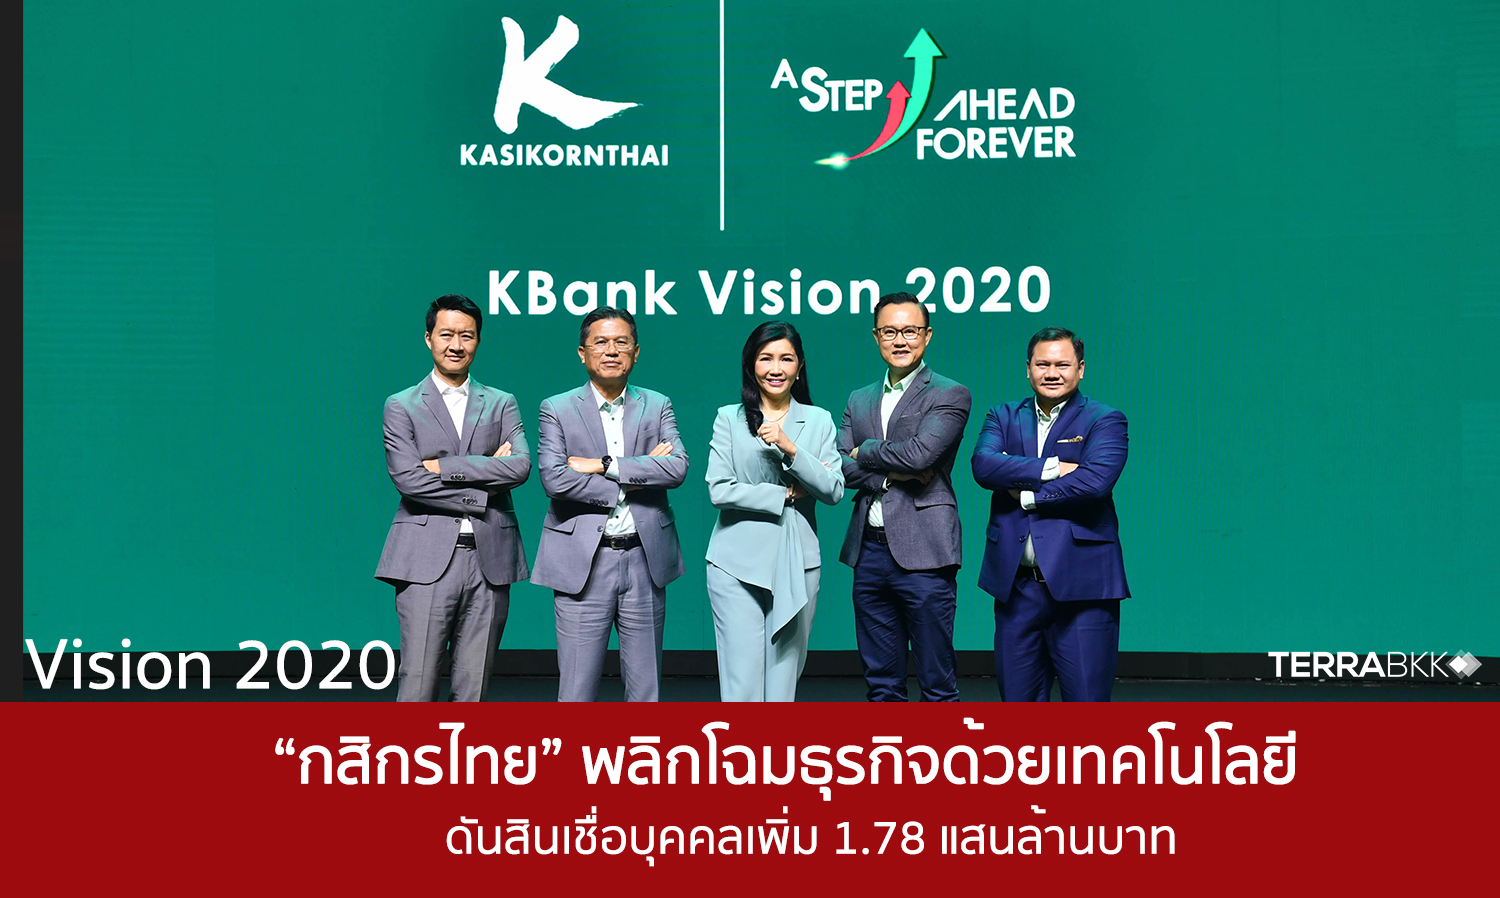 Vision 2020 “กสิกรไทย” พลิกโฉมธุรกิจด้วยเทคโนโลยี ดันสินเชื่อบุคคลเพิ่ม 1.78 แสนล้านบาท